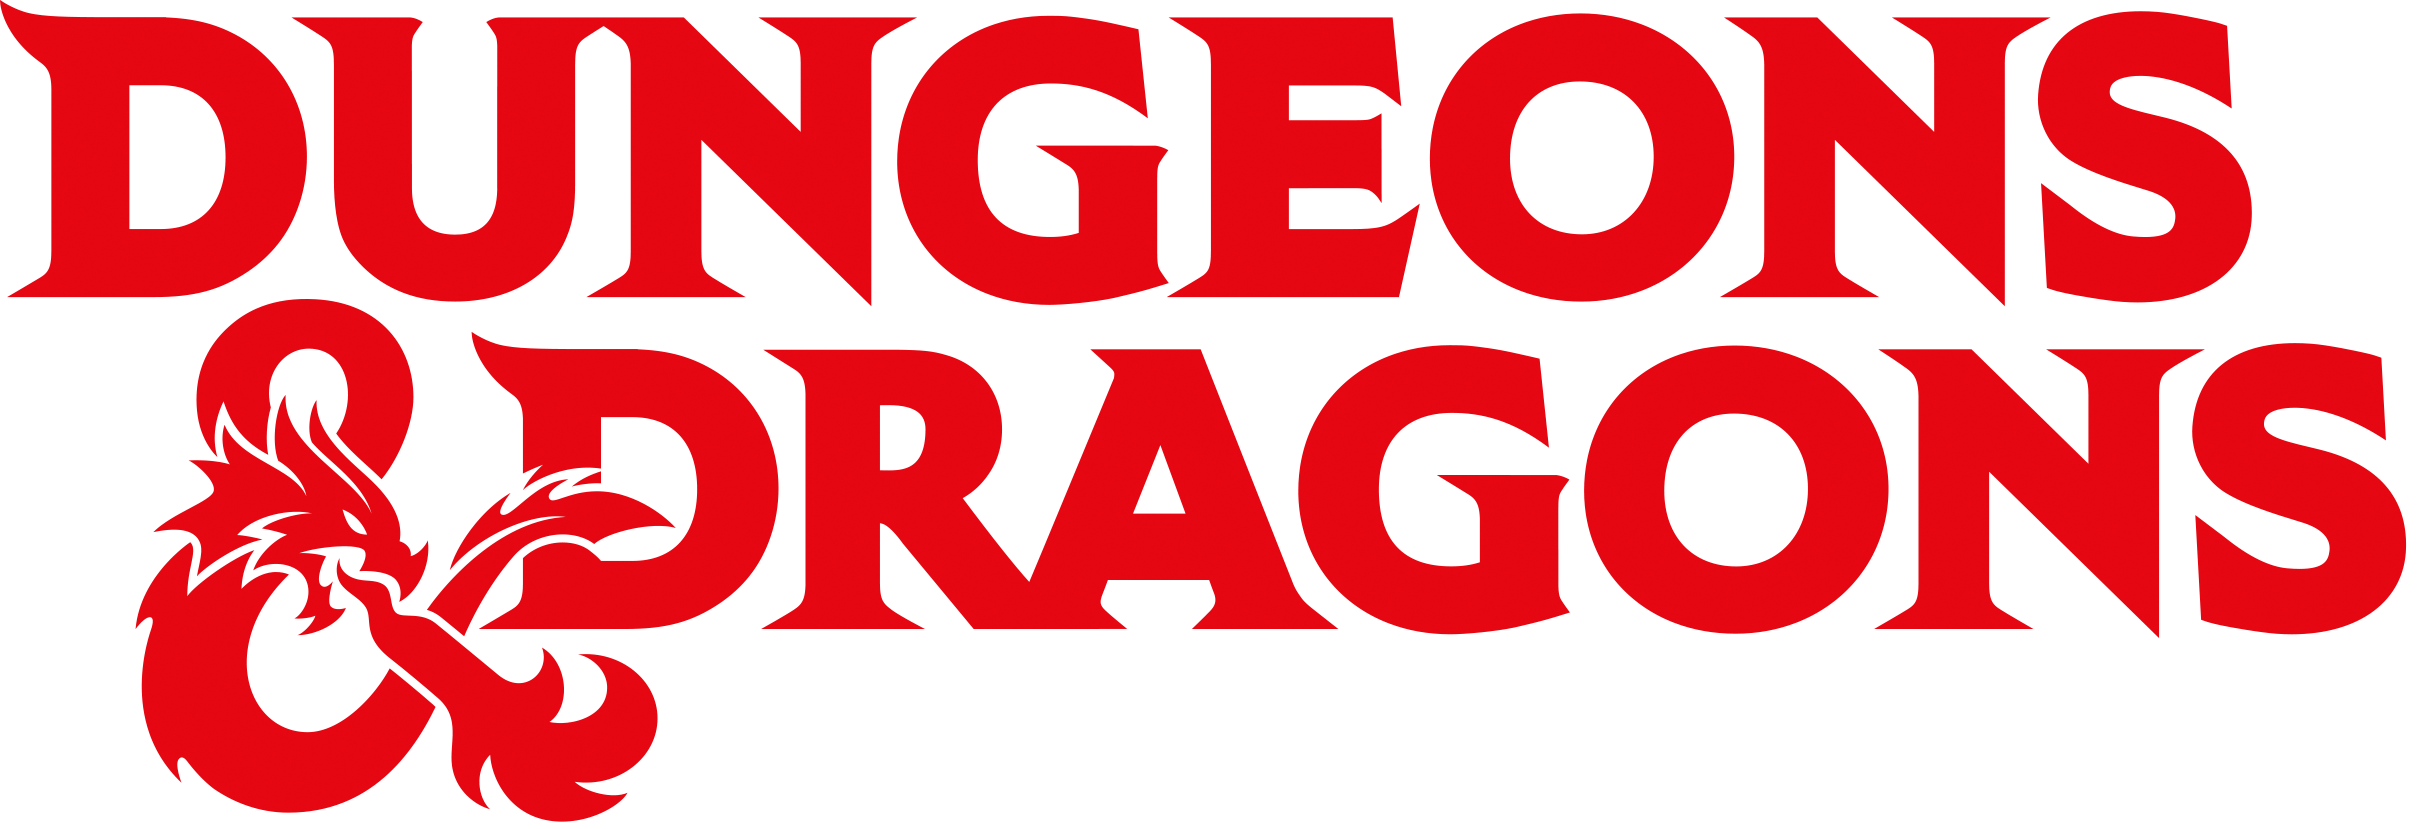 Ver categoría de juegos de dungeons & dragons (d&d)